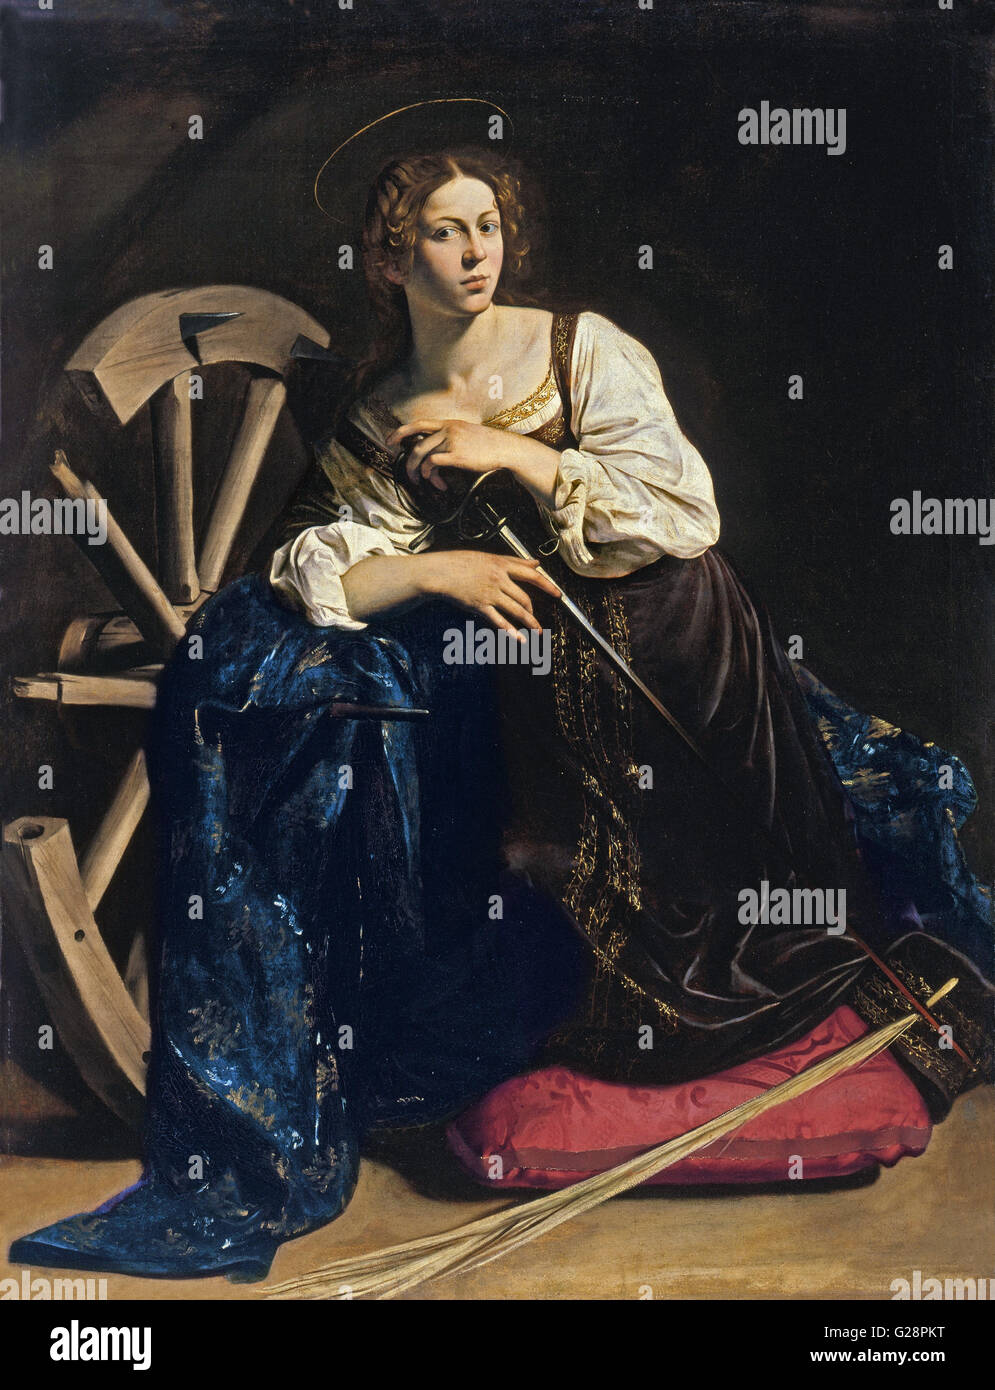 Caravaggio - Santa Caterina di Alessandria - Museo Thyssen - Bornemisza Foto Stock